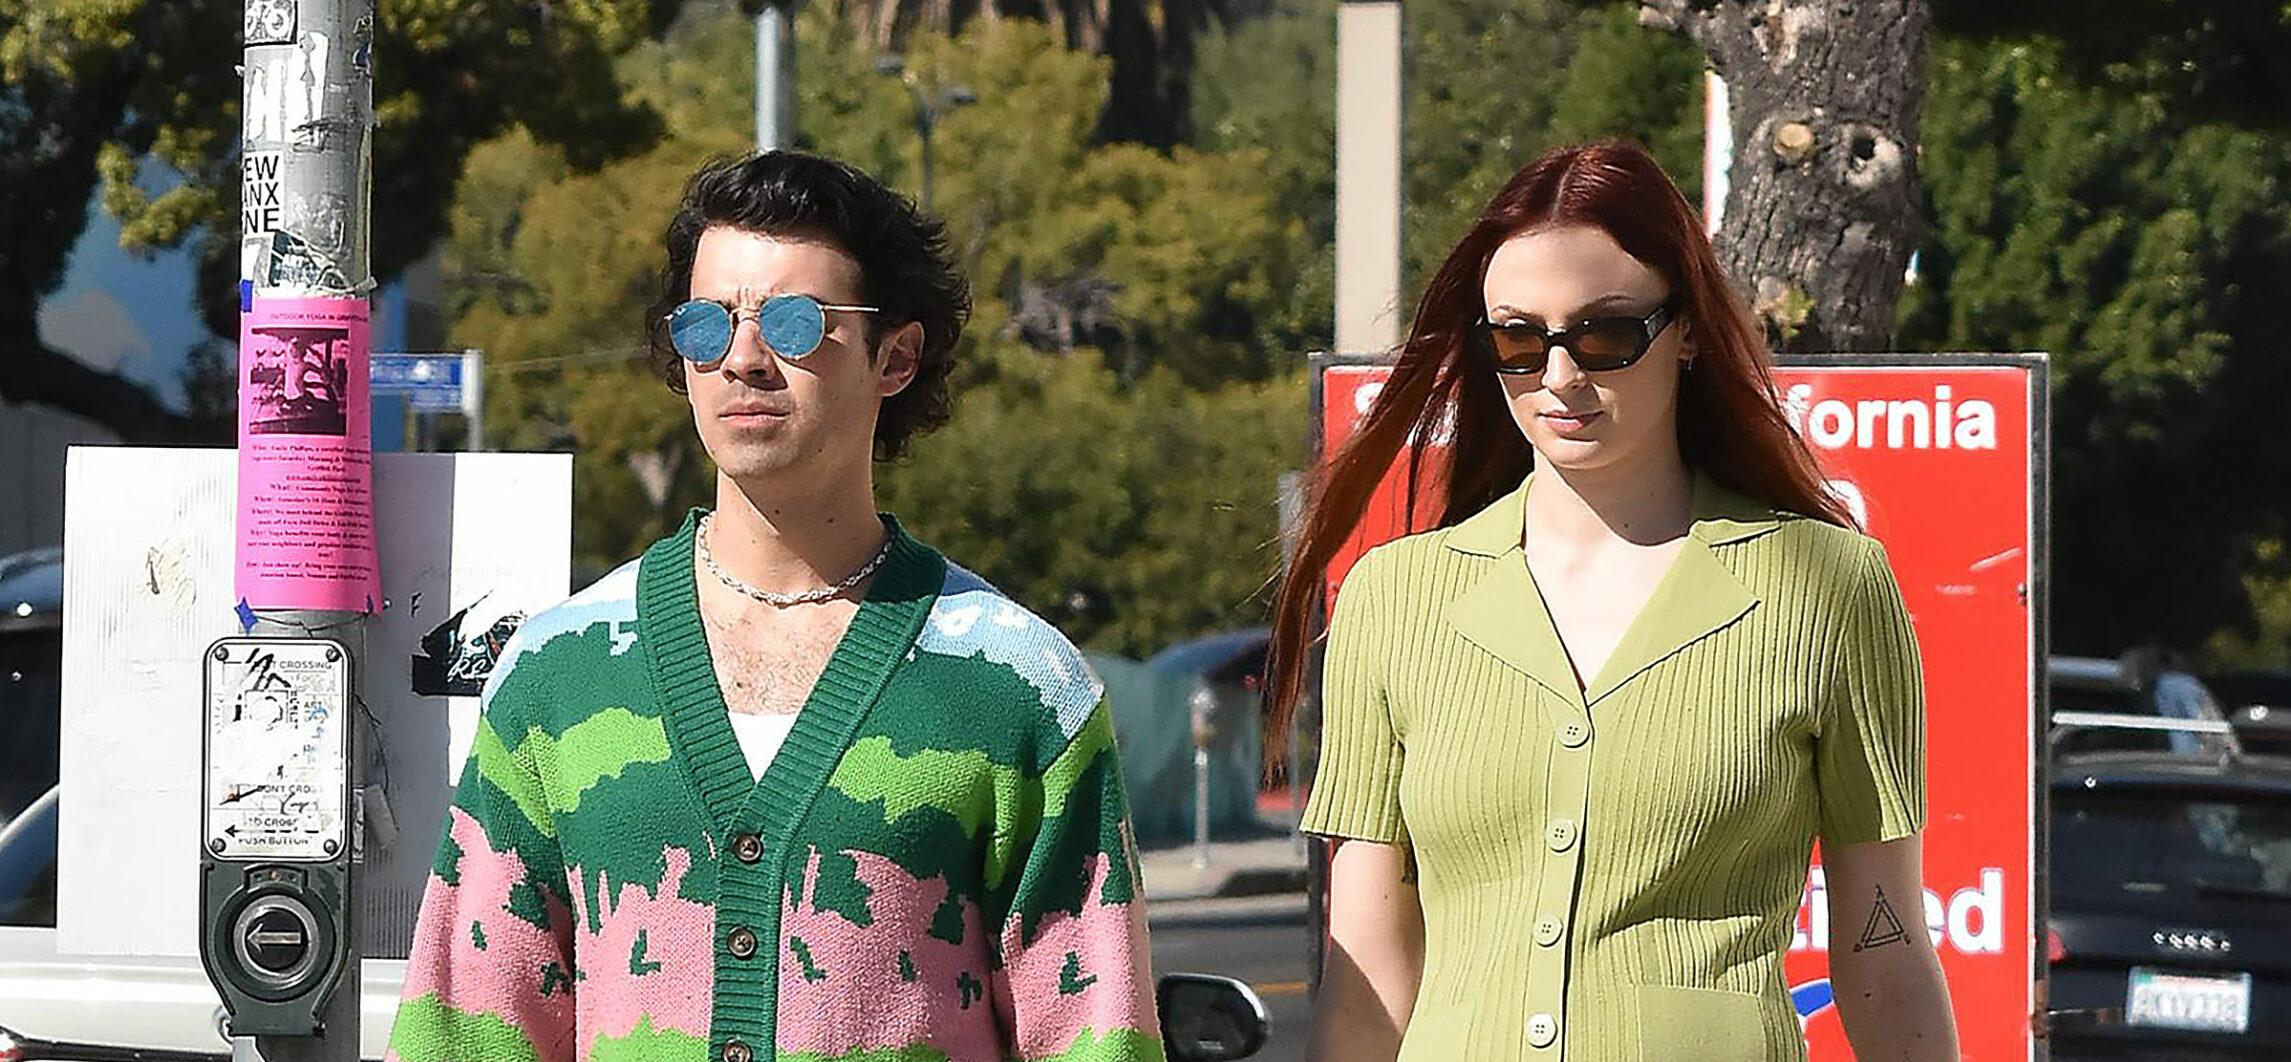 Joe Jonas and wife Sophie Turner strolling in Los Angeles